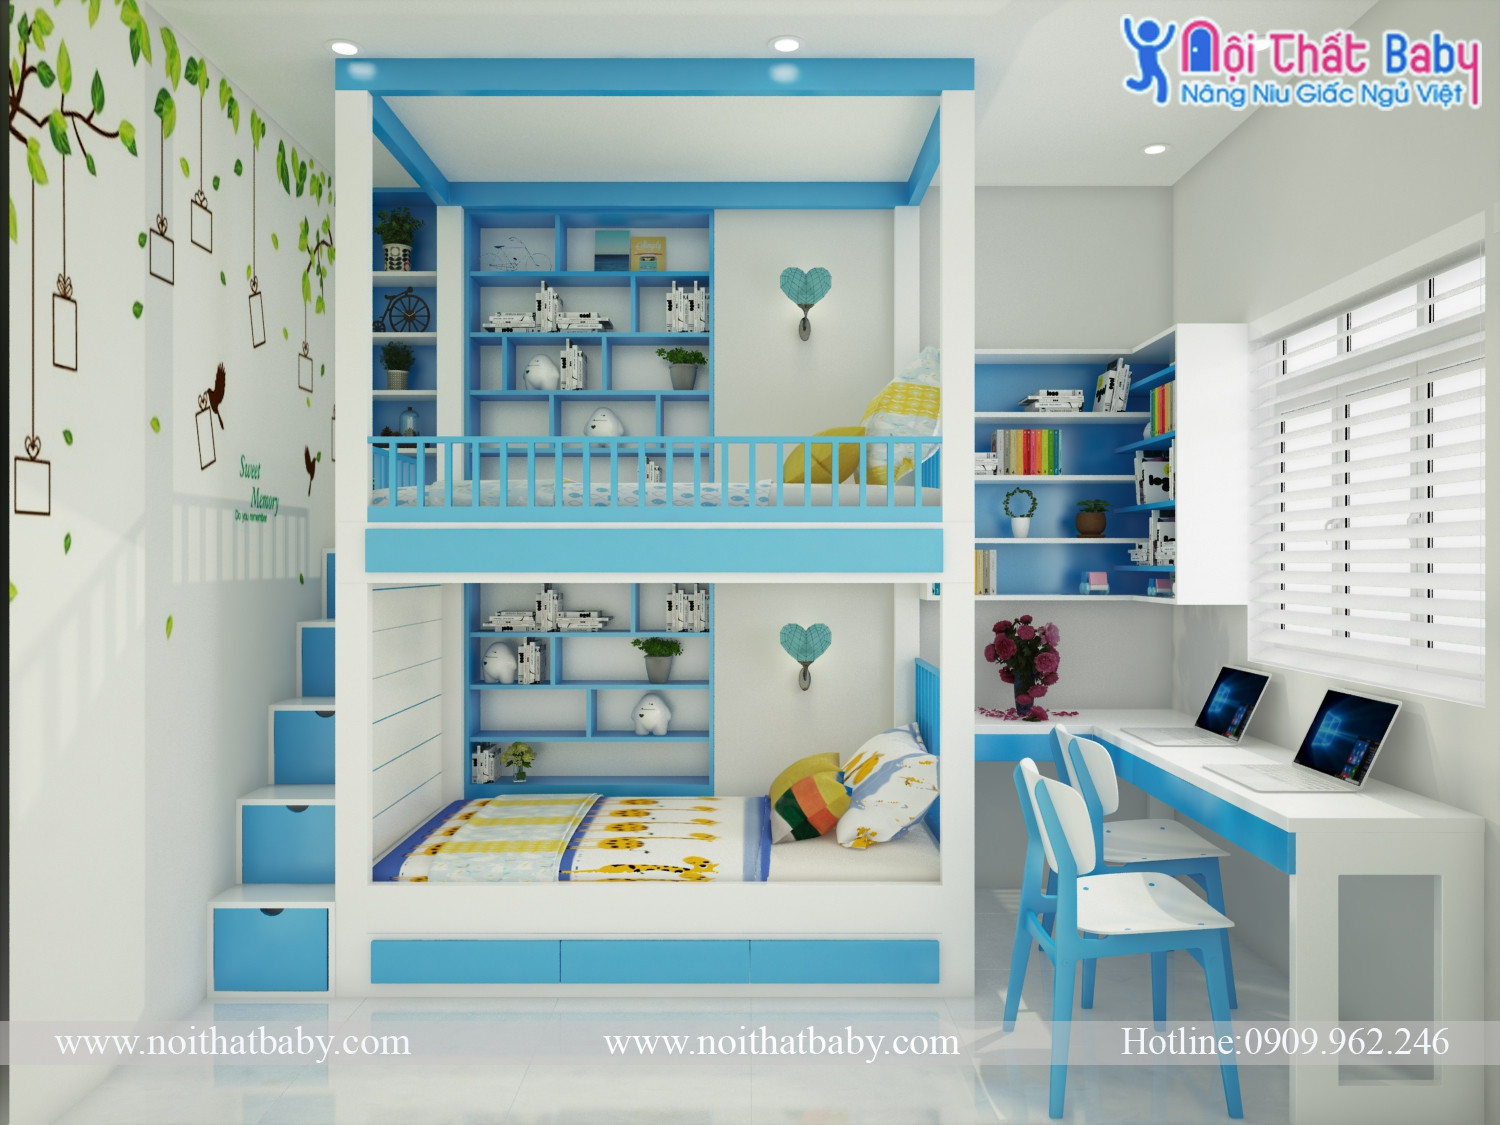 Giường tầng trẻ em đẹp: Những chiếc giường tầng trẻ em đẹp sẽ là điểm nhấn tuyệt vời cho phòng ngủ của con trẻ. Với thiết kế thông minh và nhiều tùy chọn màu sắc, giường tầng trẻ em sẽ mang đến không gian ngủ đầy mơ mộng và sáng tạo cho các bé yêu.